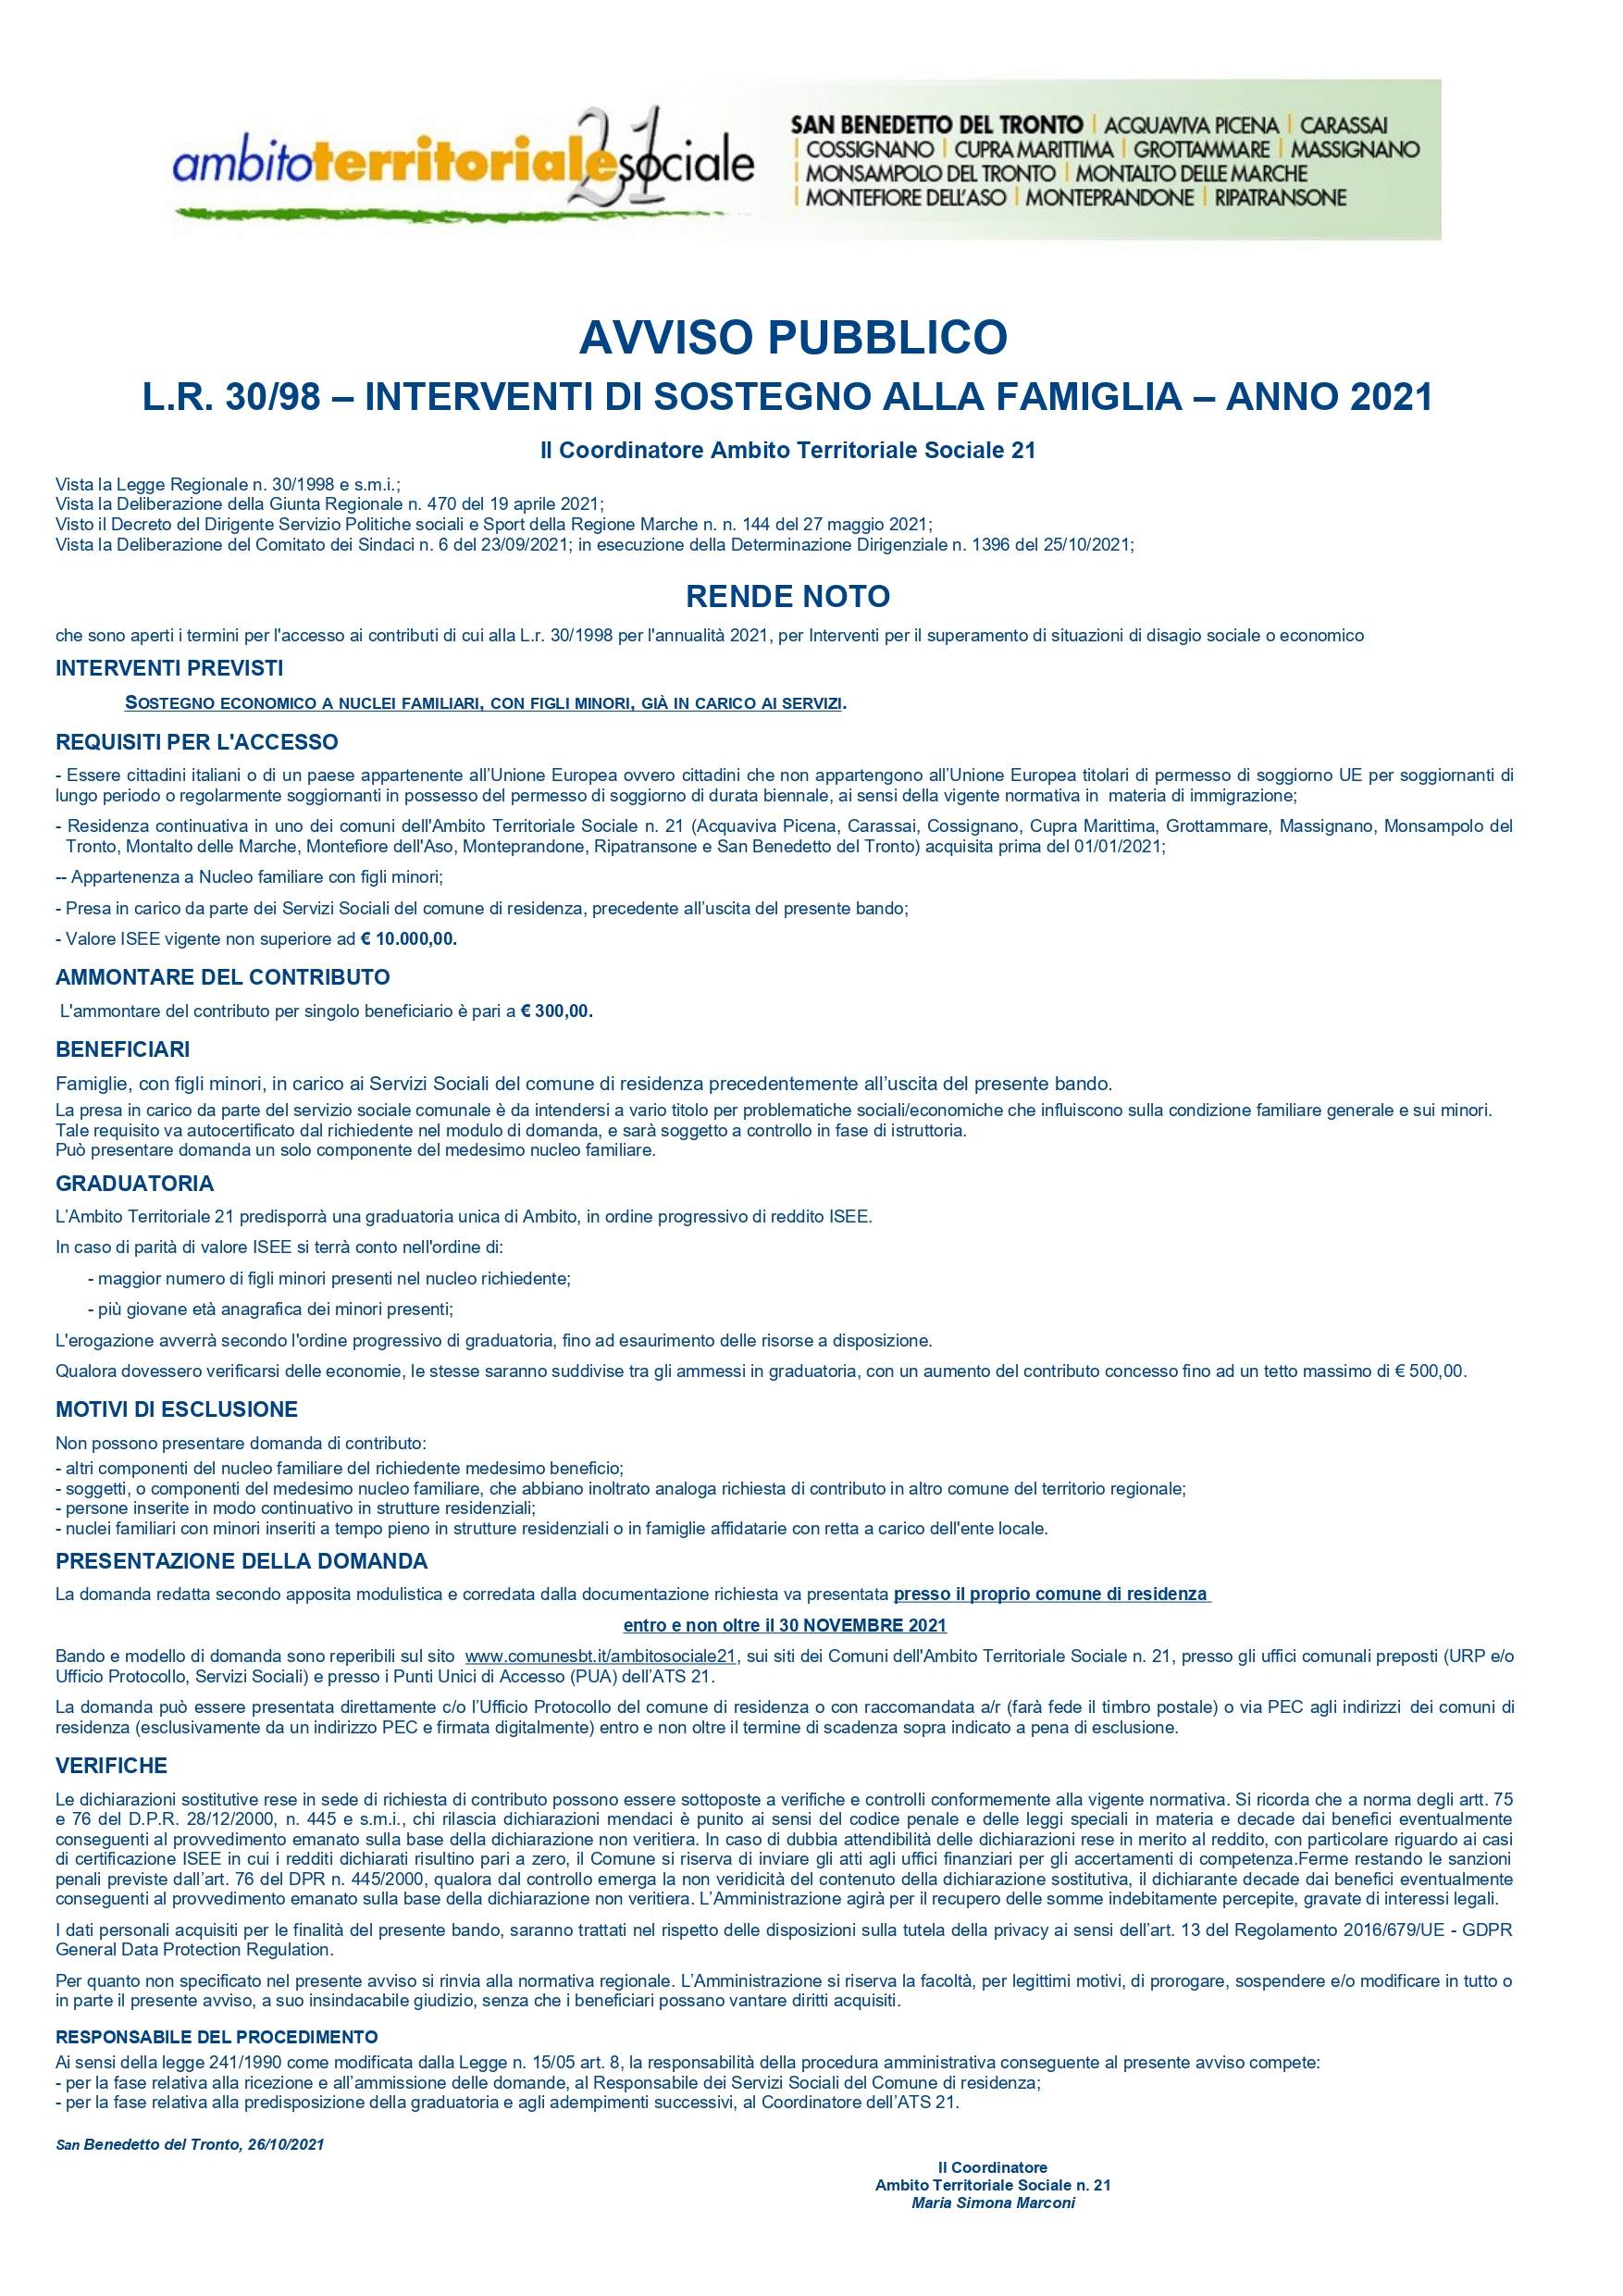 AVVISO PUBBLICO L.R. 30/98 - INTERVENTI DI SOSTEGNO ALLA FAMIGLIA - ANNO 2021